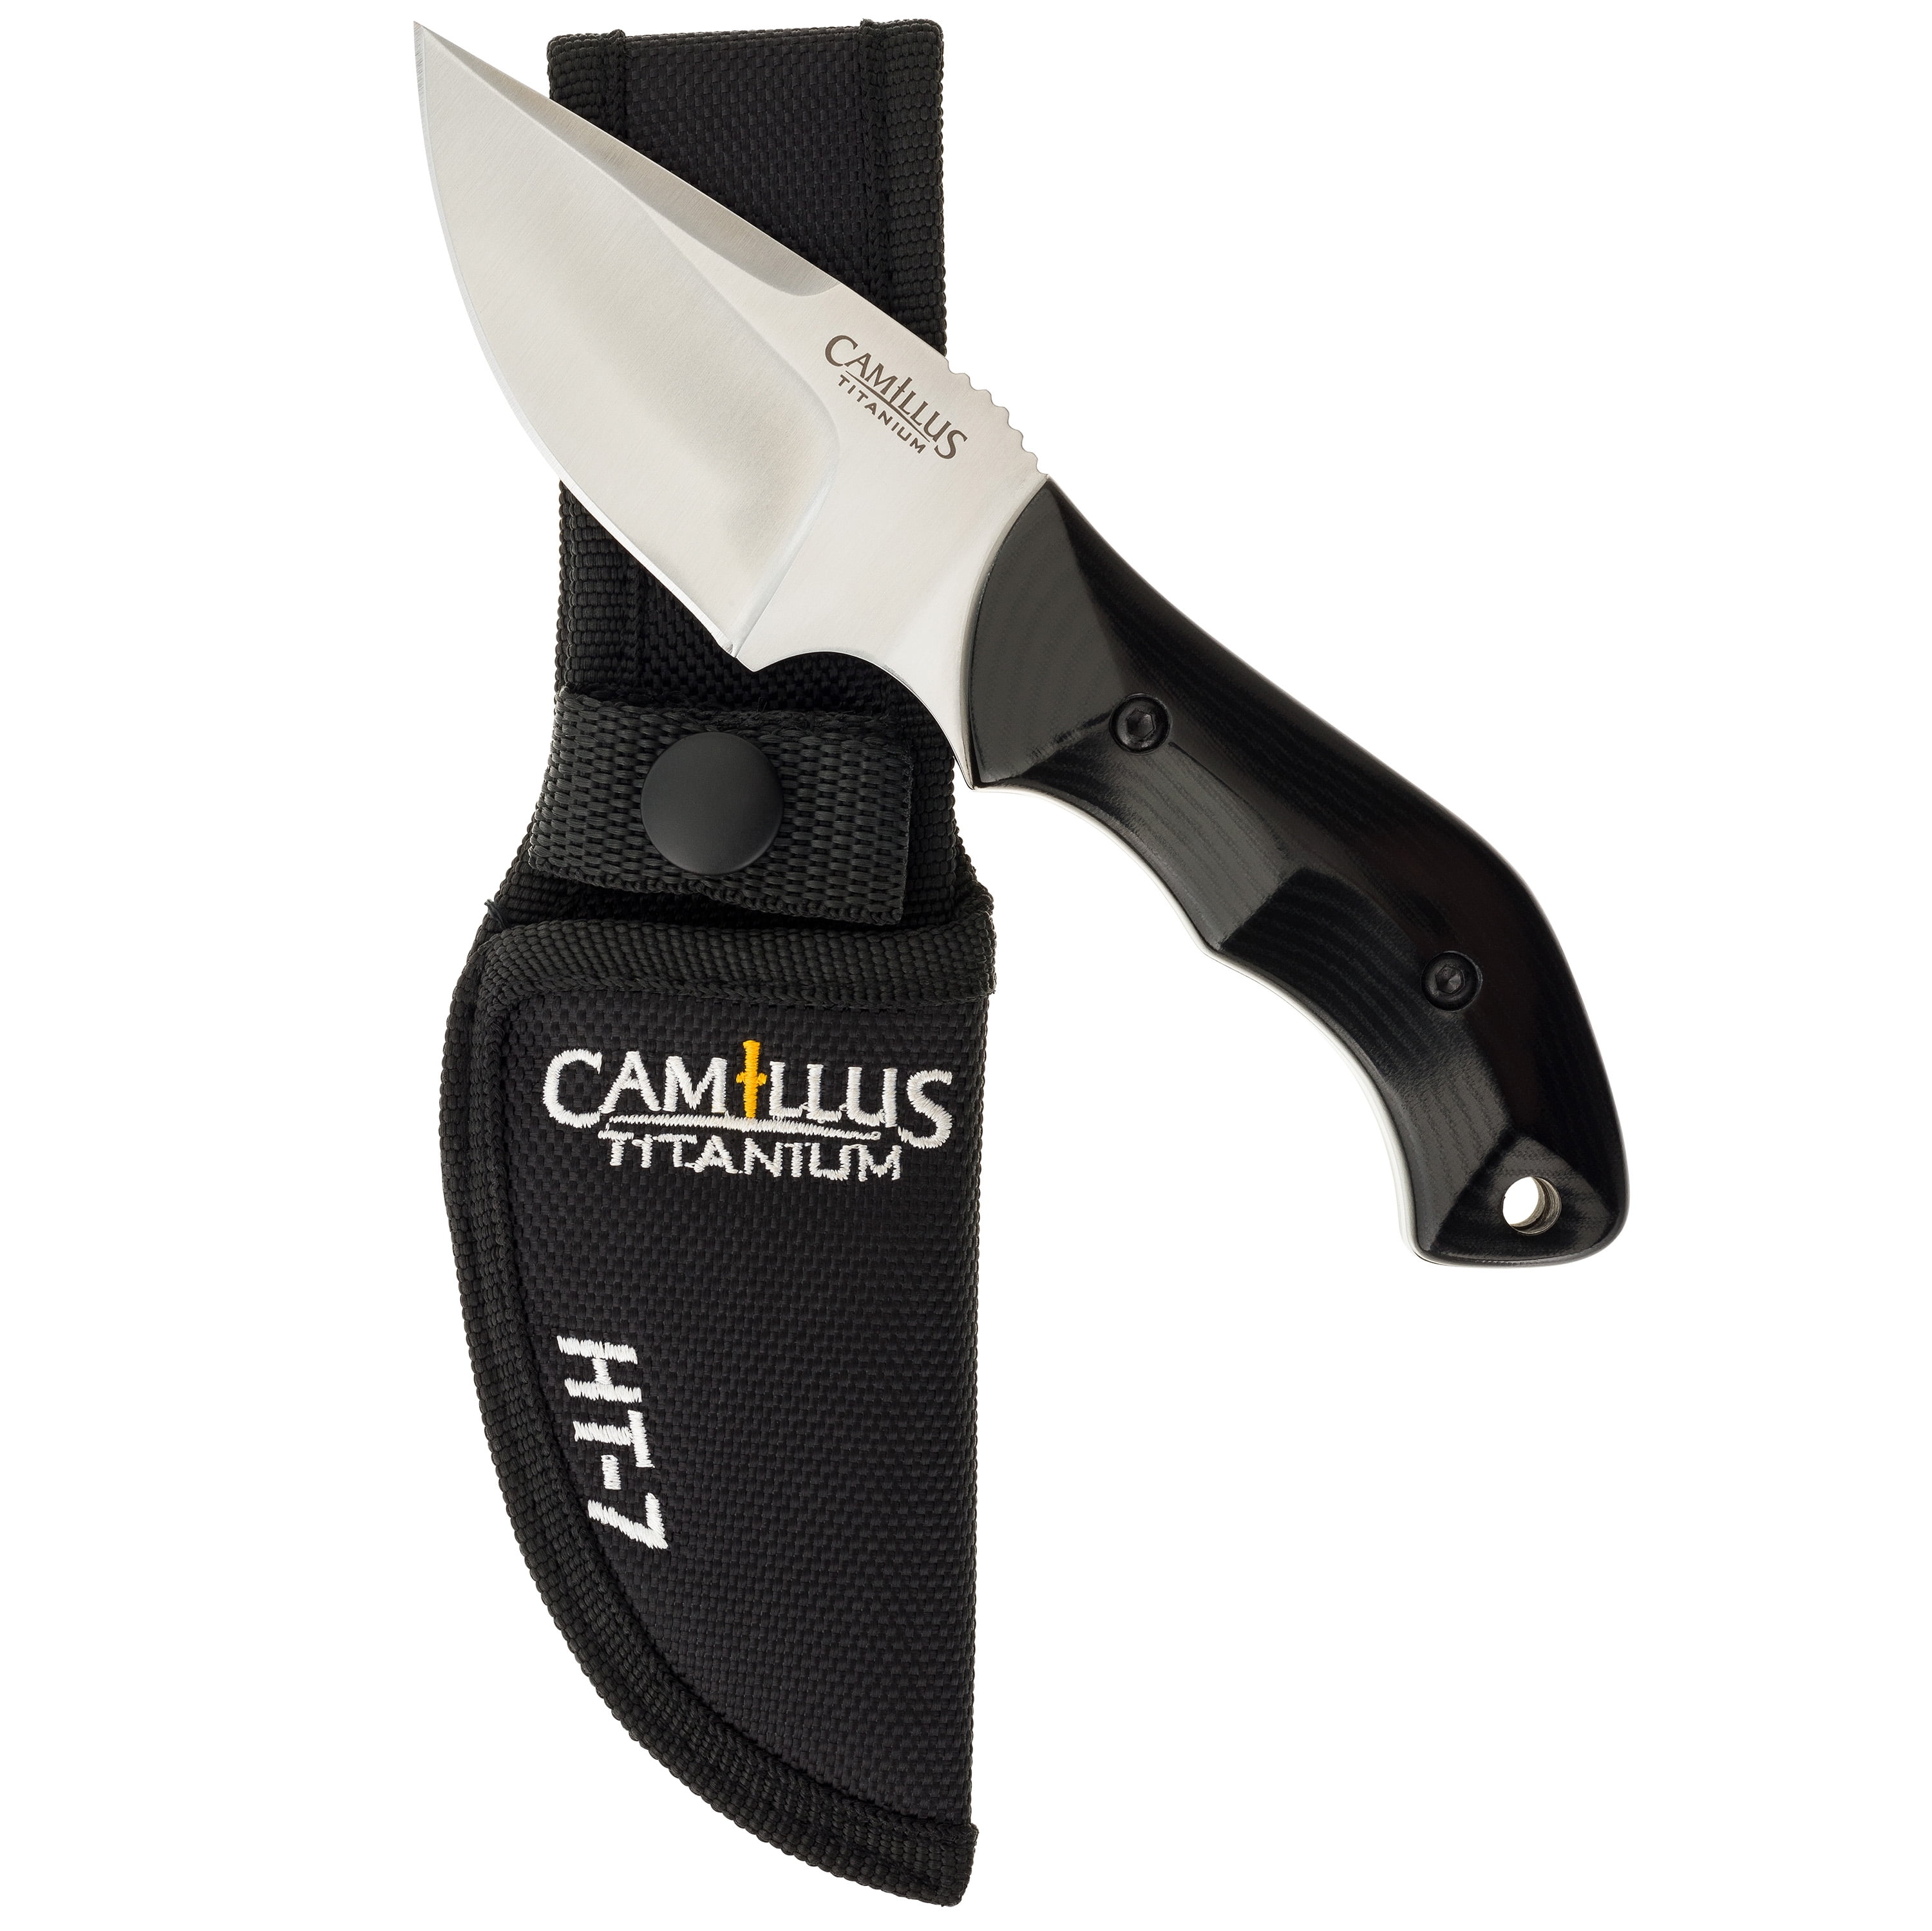 Нож с фиксированным лезвием. Камиллус нож Голд стил. Ножи бенчмейд с фиксированным клинком. Бенчмейд ножи с фиксированным клинком 154. Ht0007.